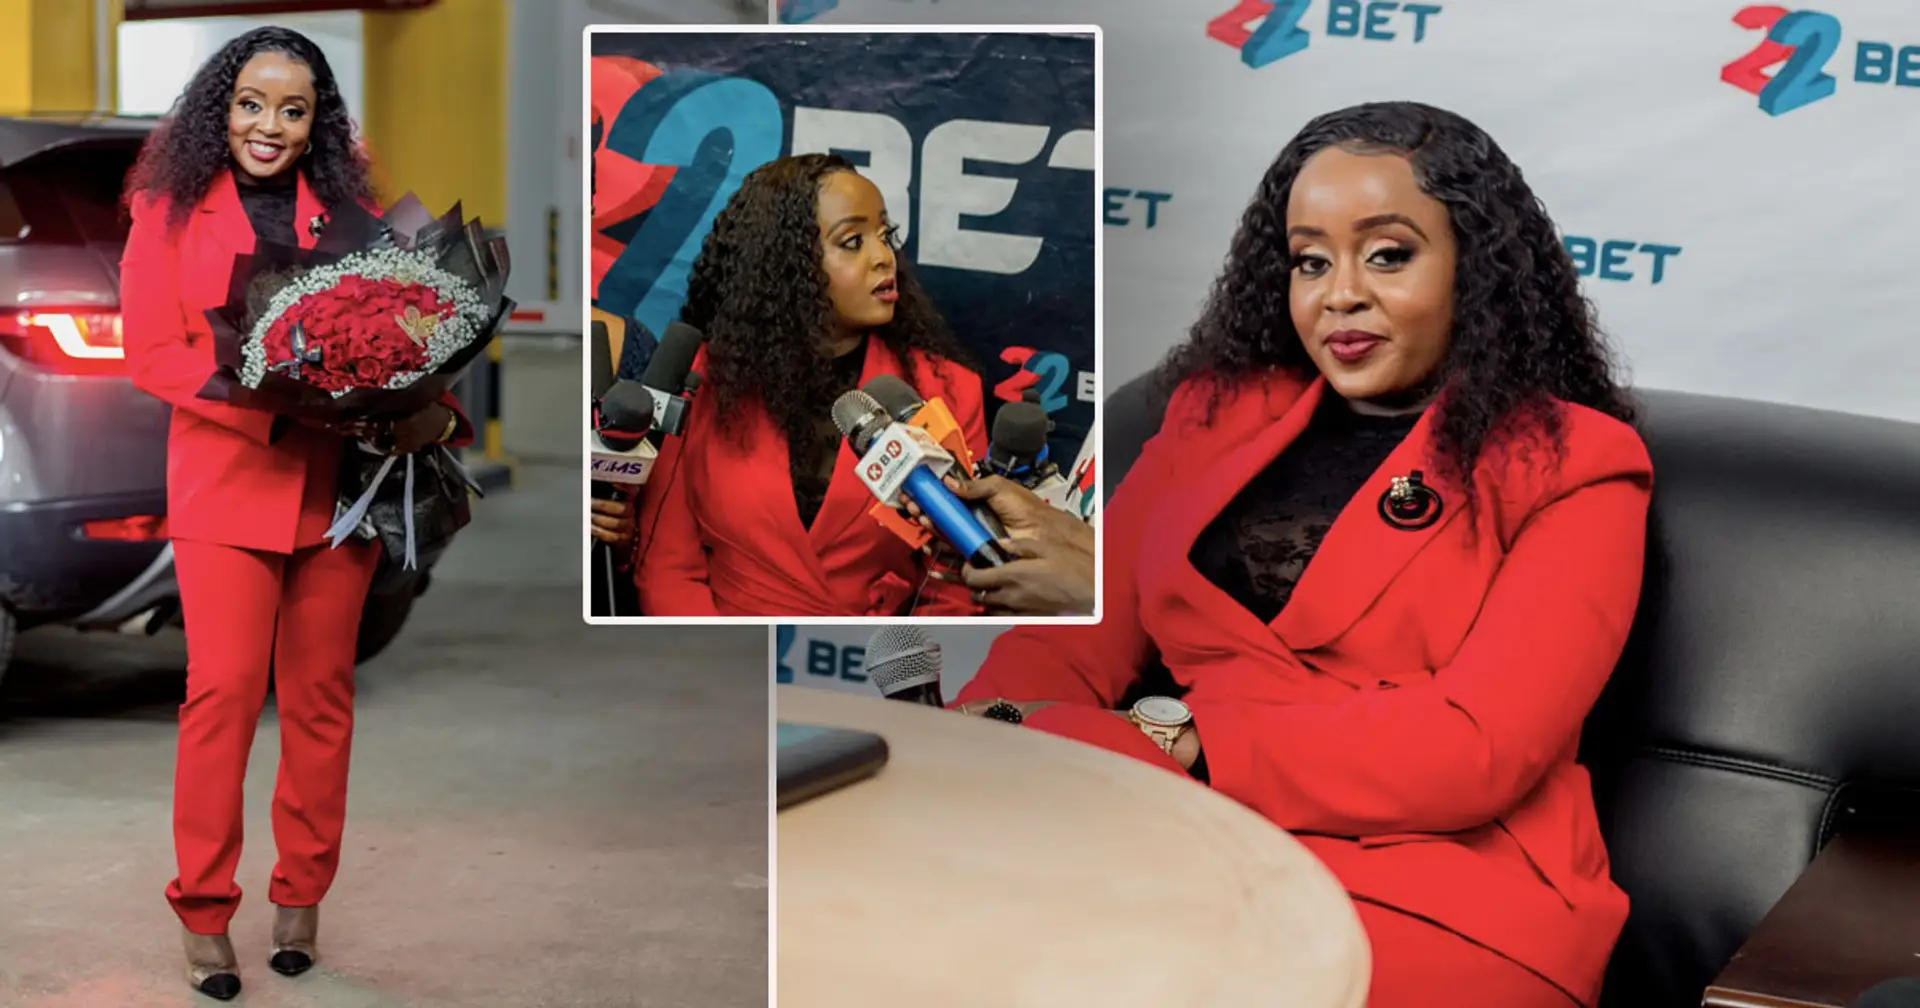 "Je crois au pouvoir du sport pour connecter les gens !" : la star afro-pop nominée par MTV devient ambassadrice de 22Bet